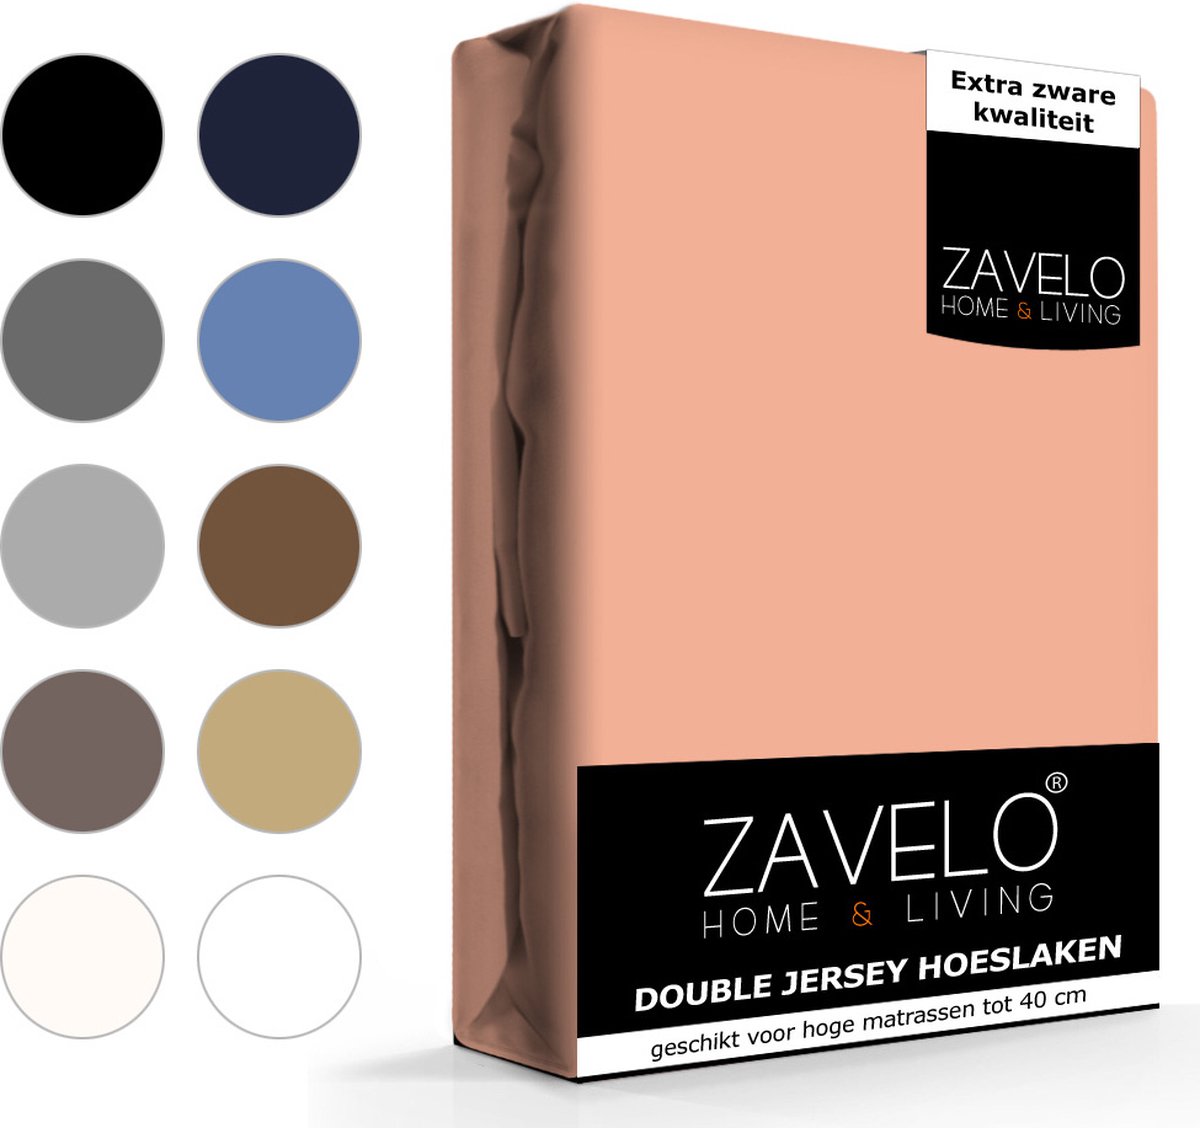 Slaaptextiel Zavelo Double Jersey Hoeslaken Perzik-1-persoons (90x220 Cm) - Roze